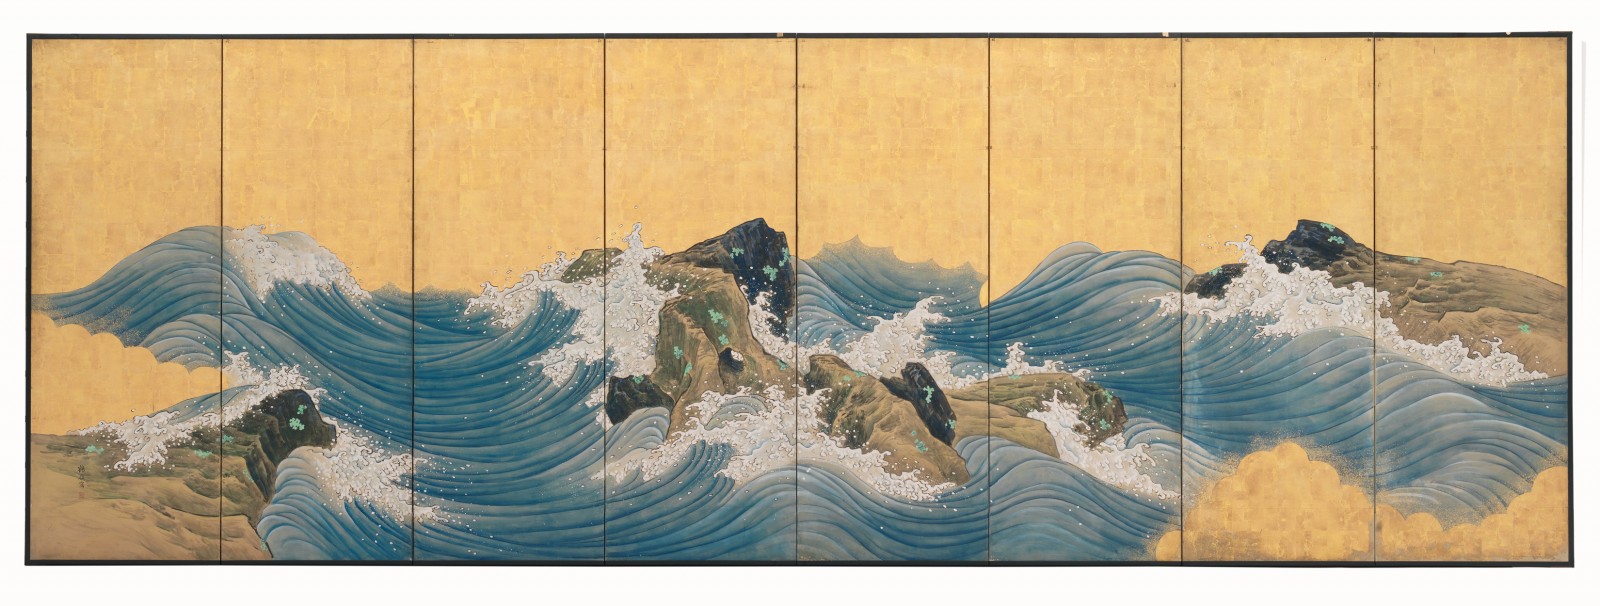 Image: Yamaato Kakurei, Kyoto River, circa 1810